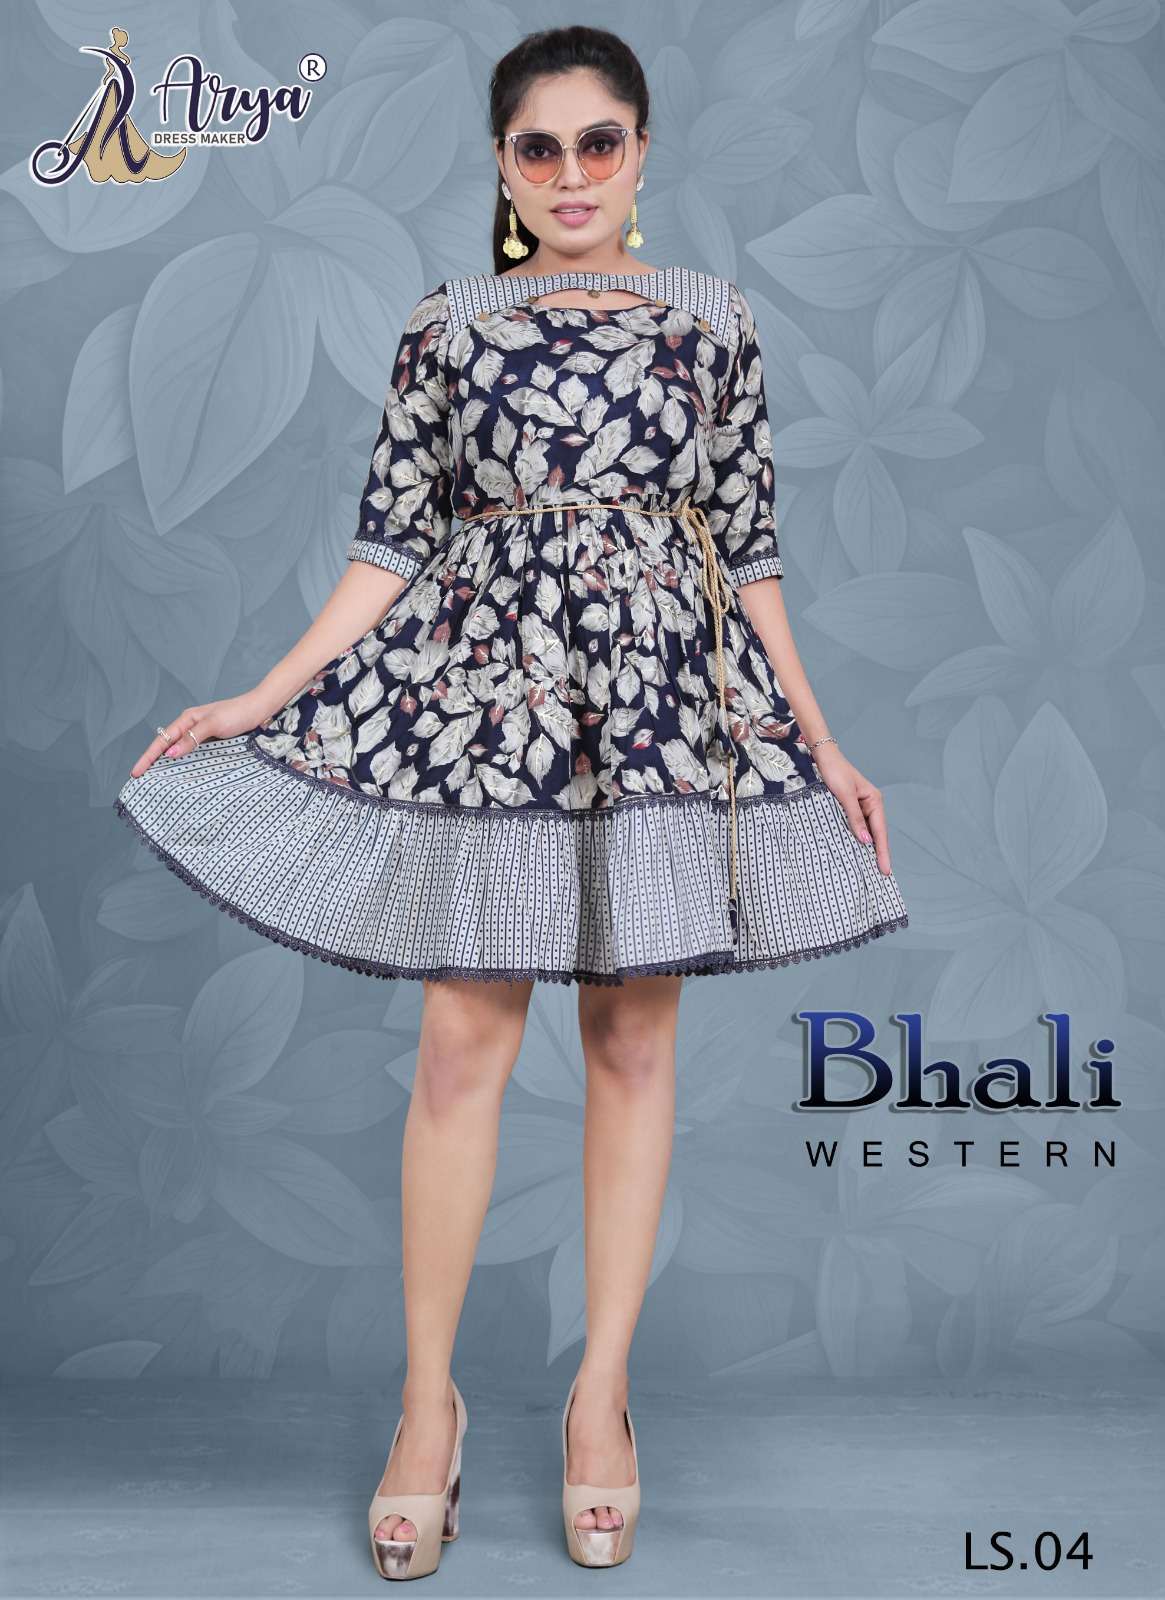 Buy Now Rafta Blue Poli Reyon New Trendy Beautiful Western Frock For Women  Wear At Arya Dress Maker